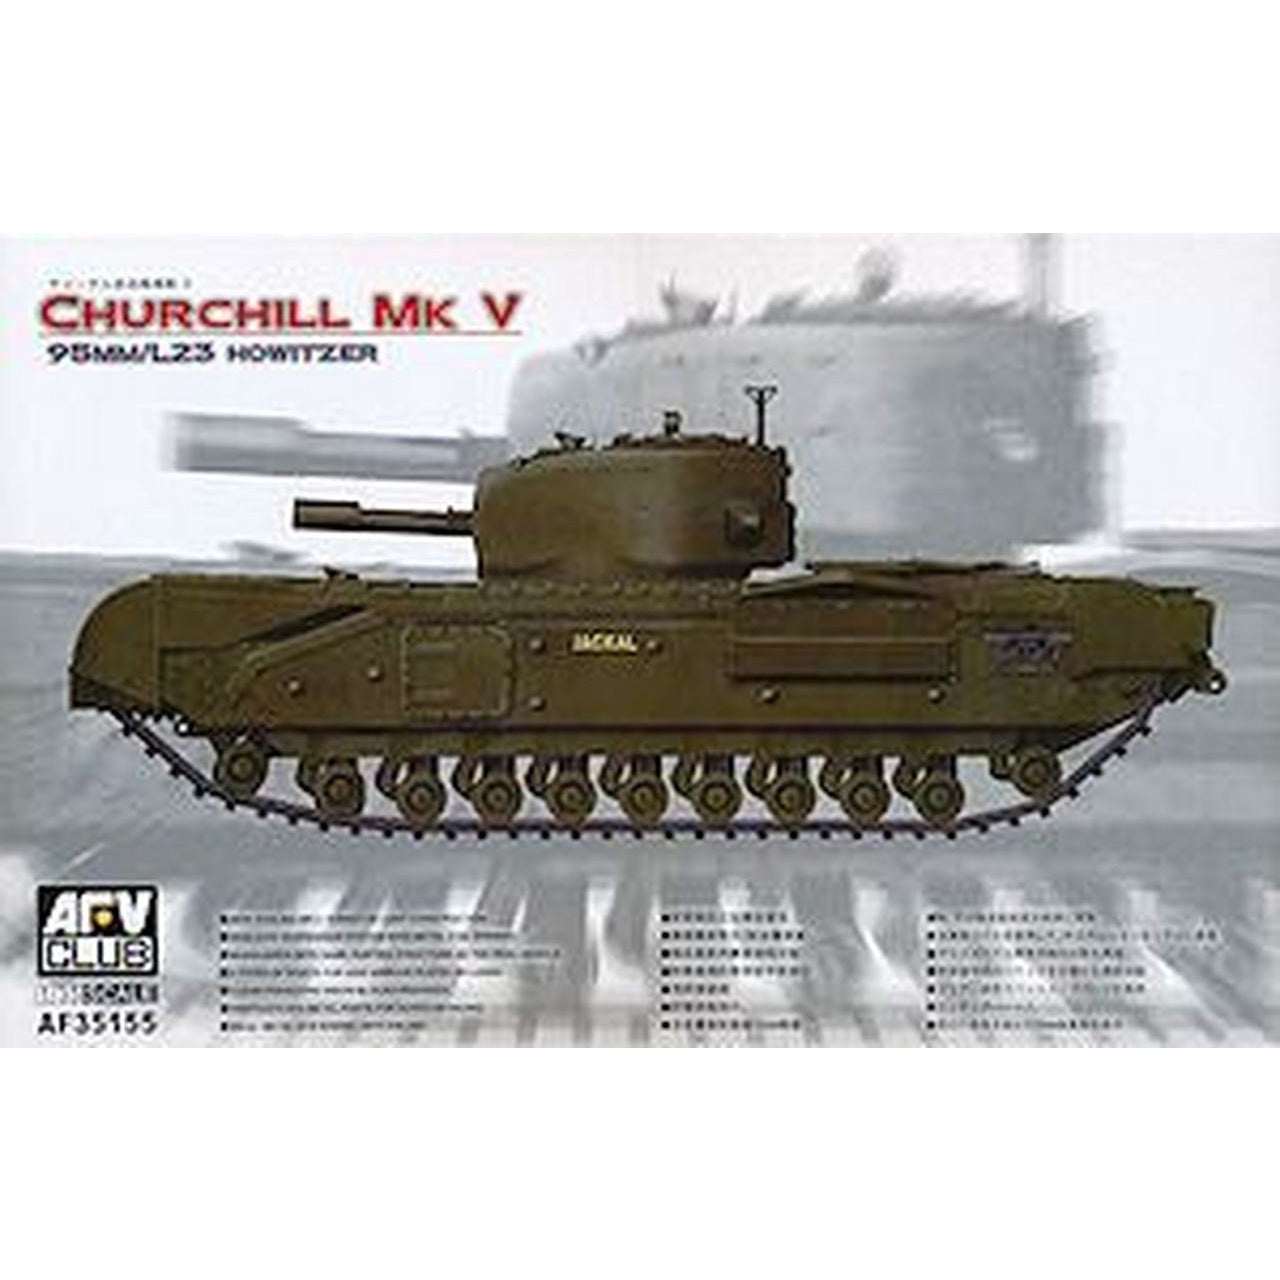 Churchill MK V w/Howitzer 1/35 by AFV